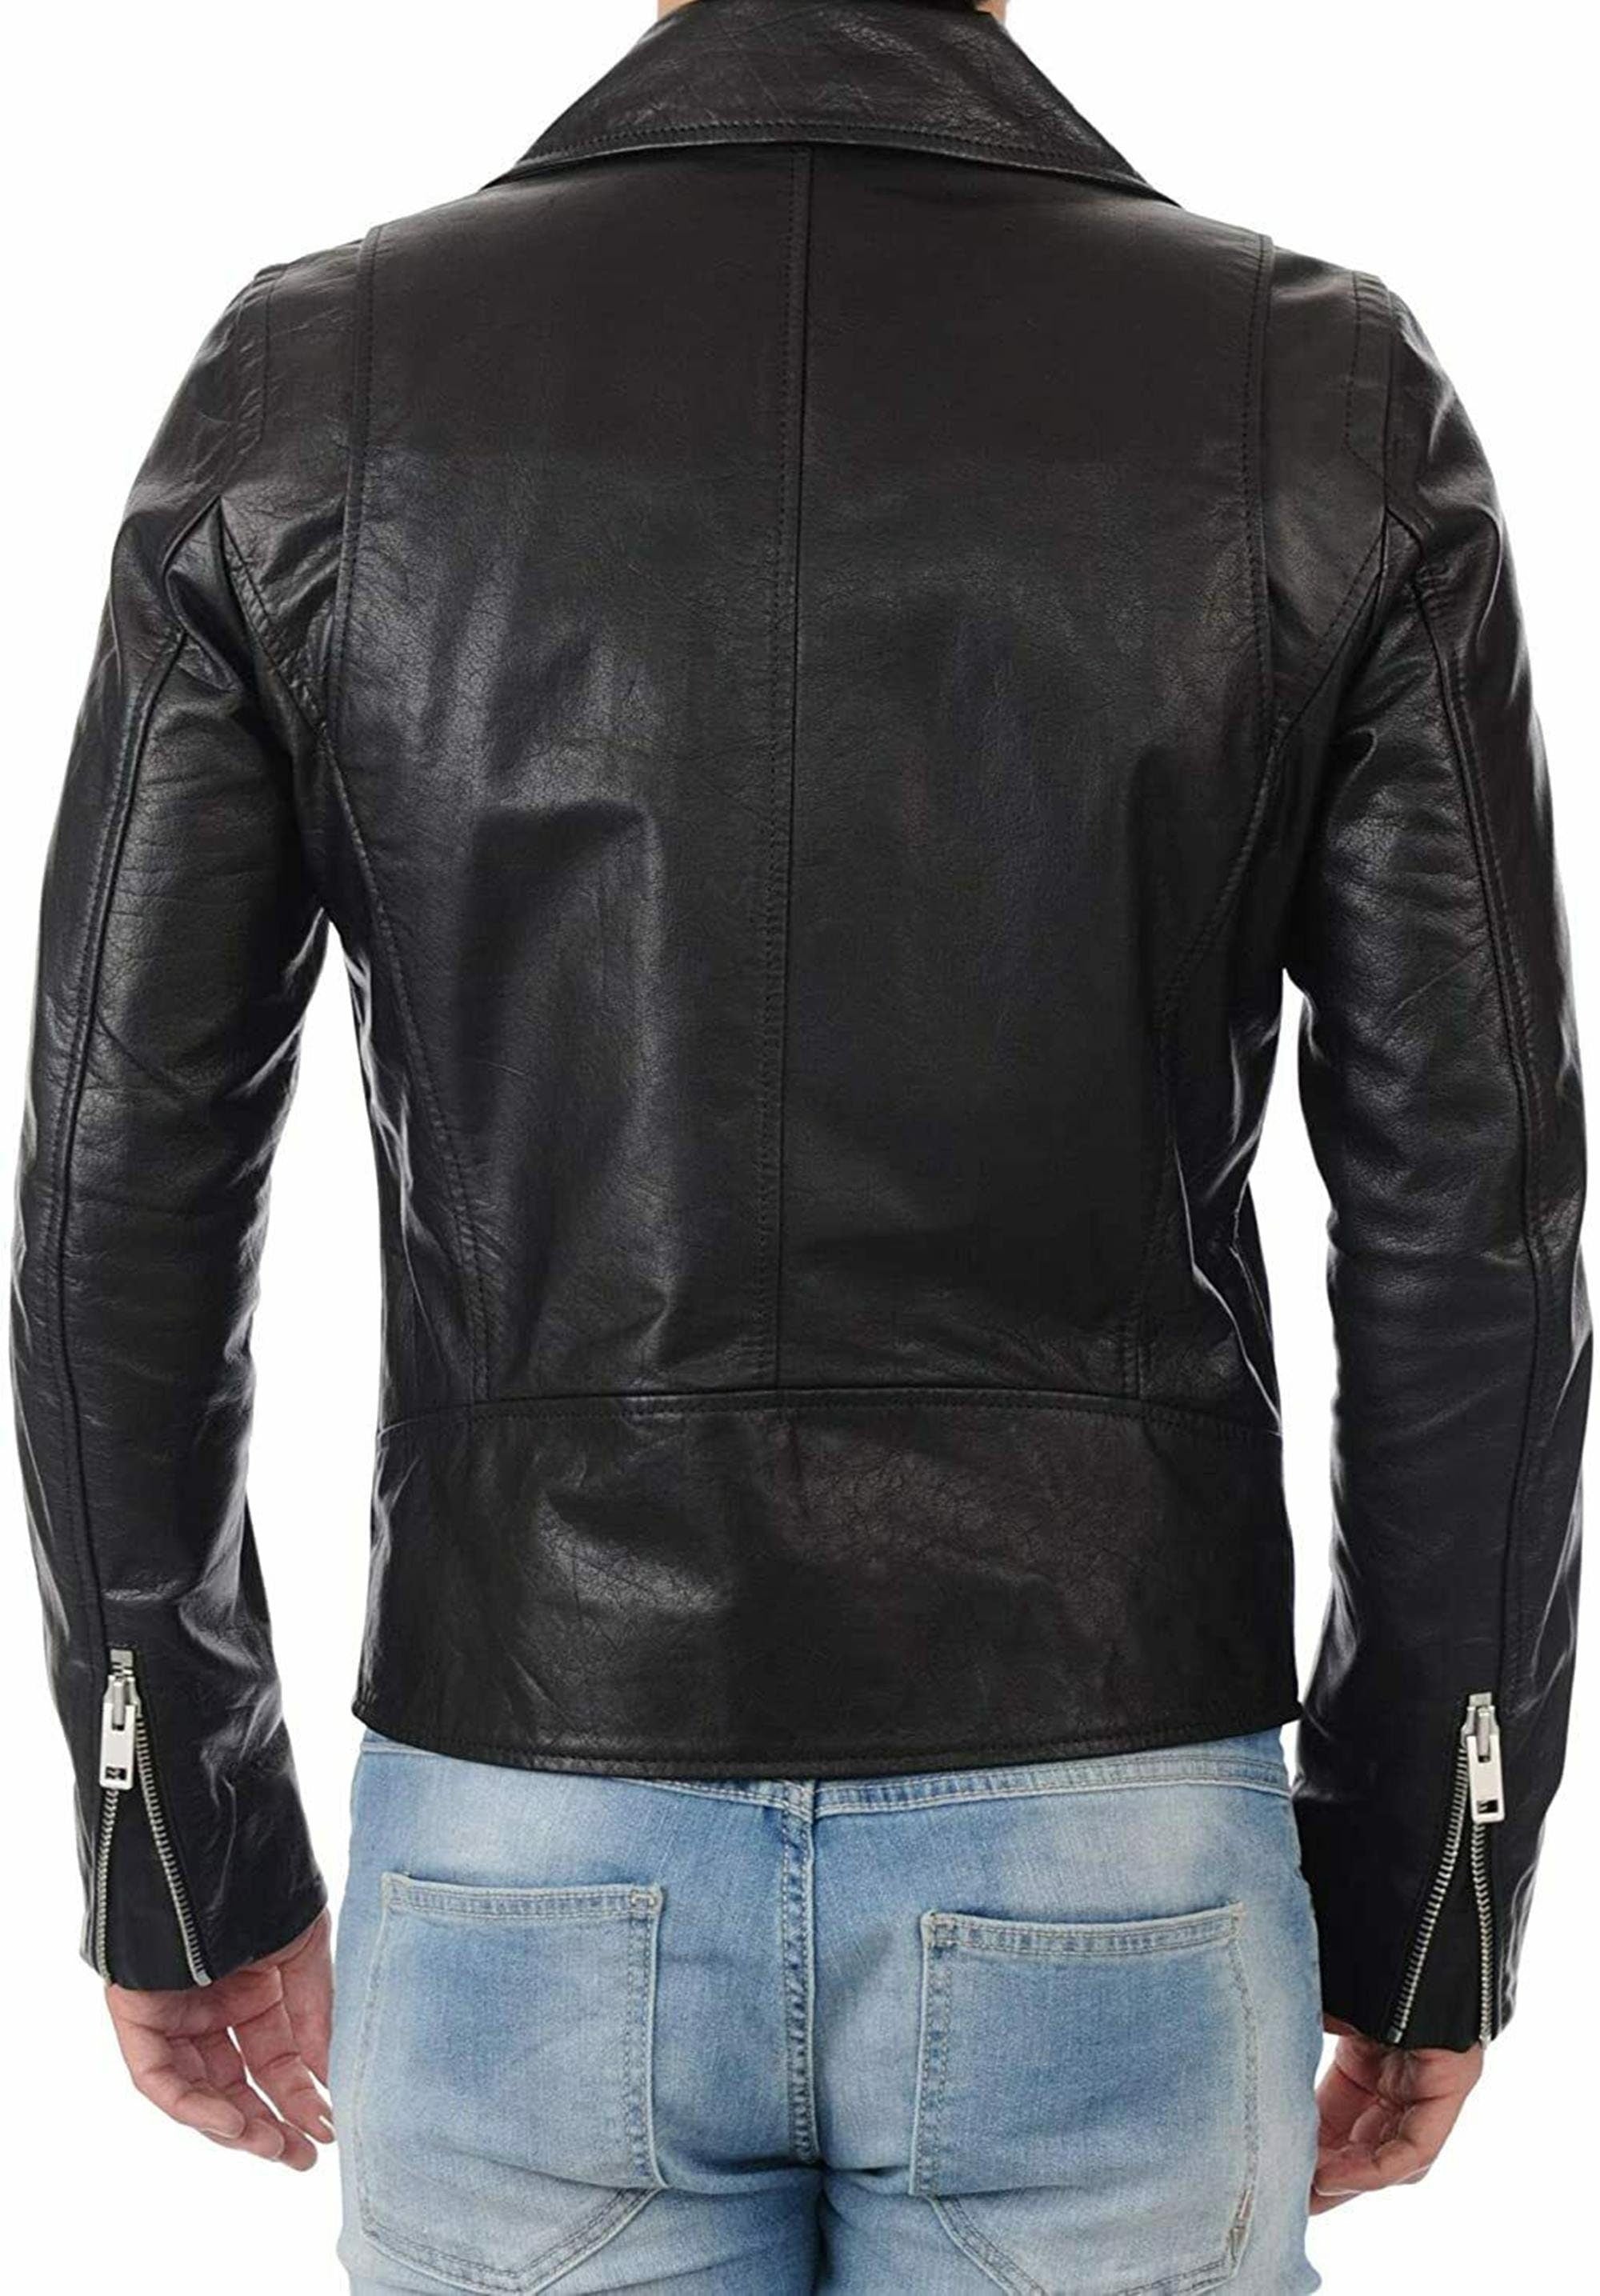 Black Biker Leather Jacket For Mens